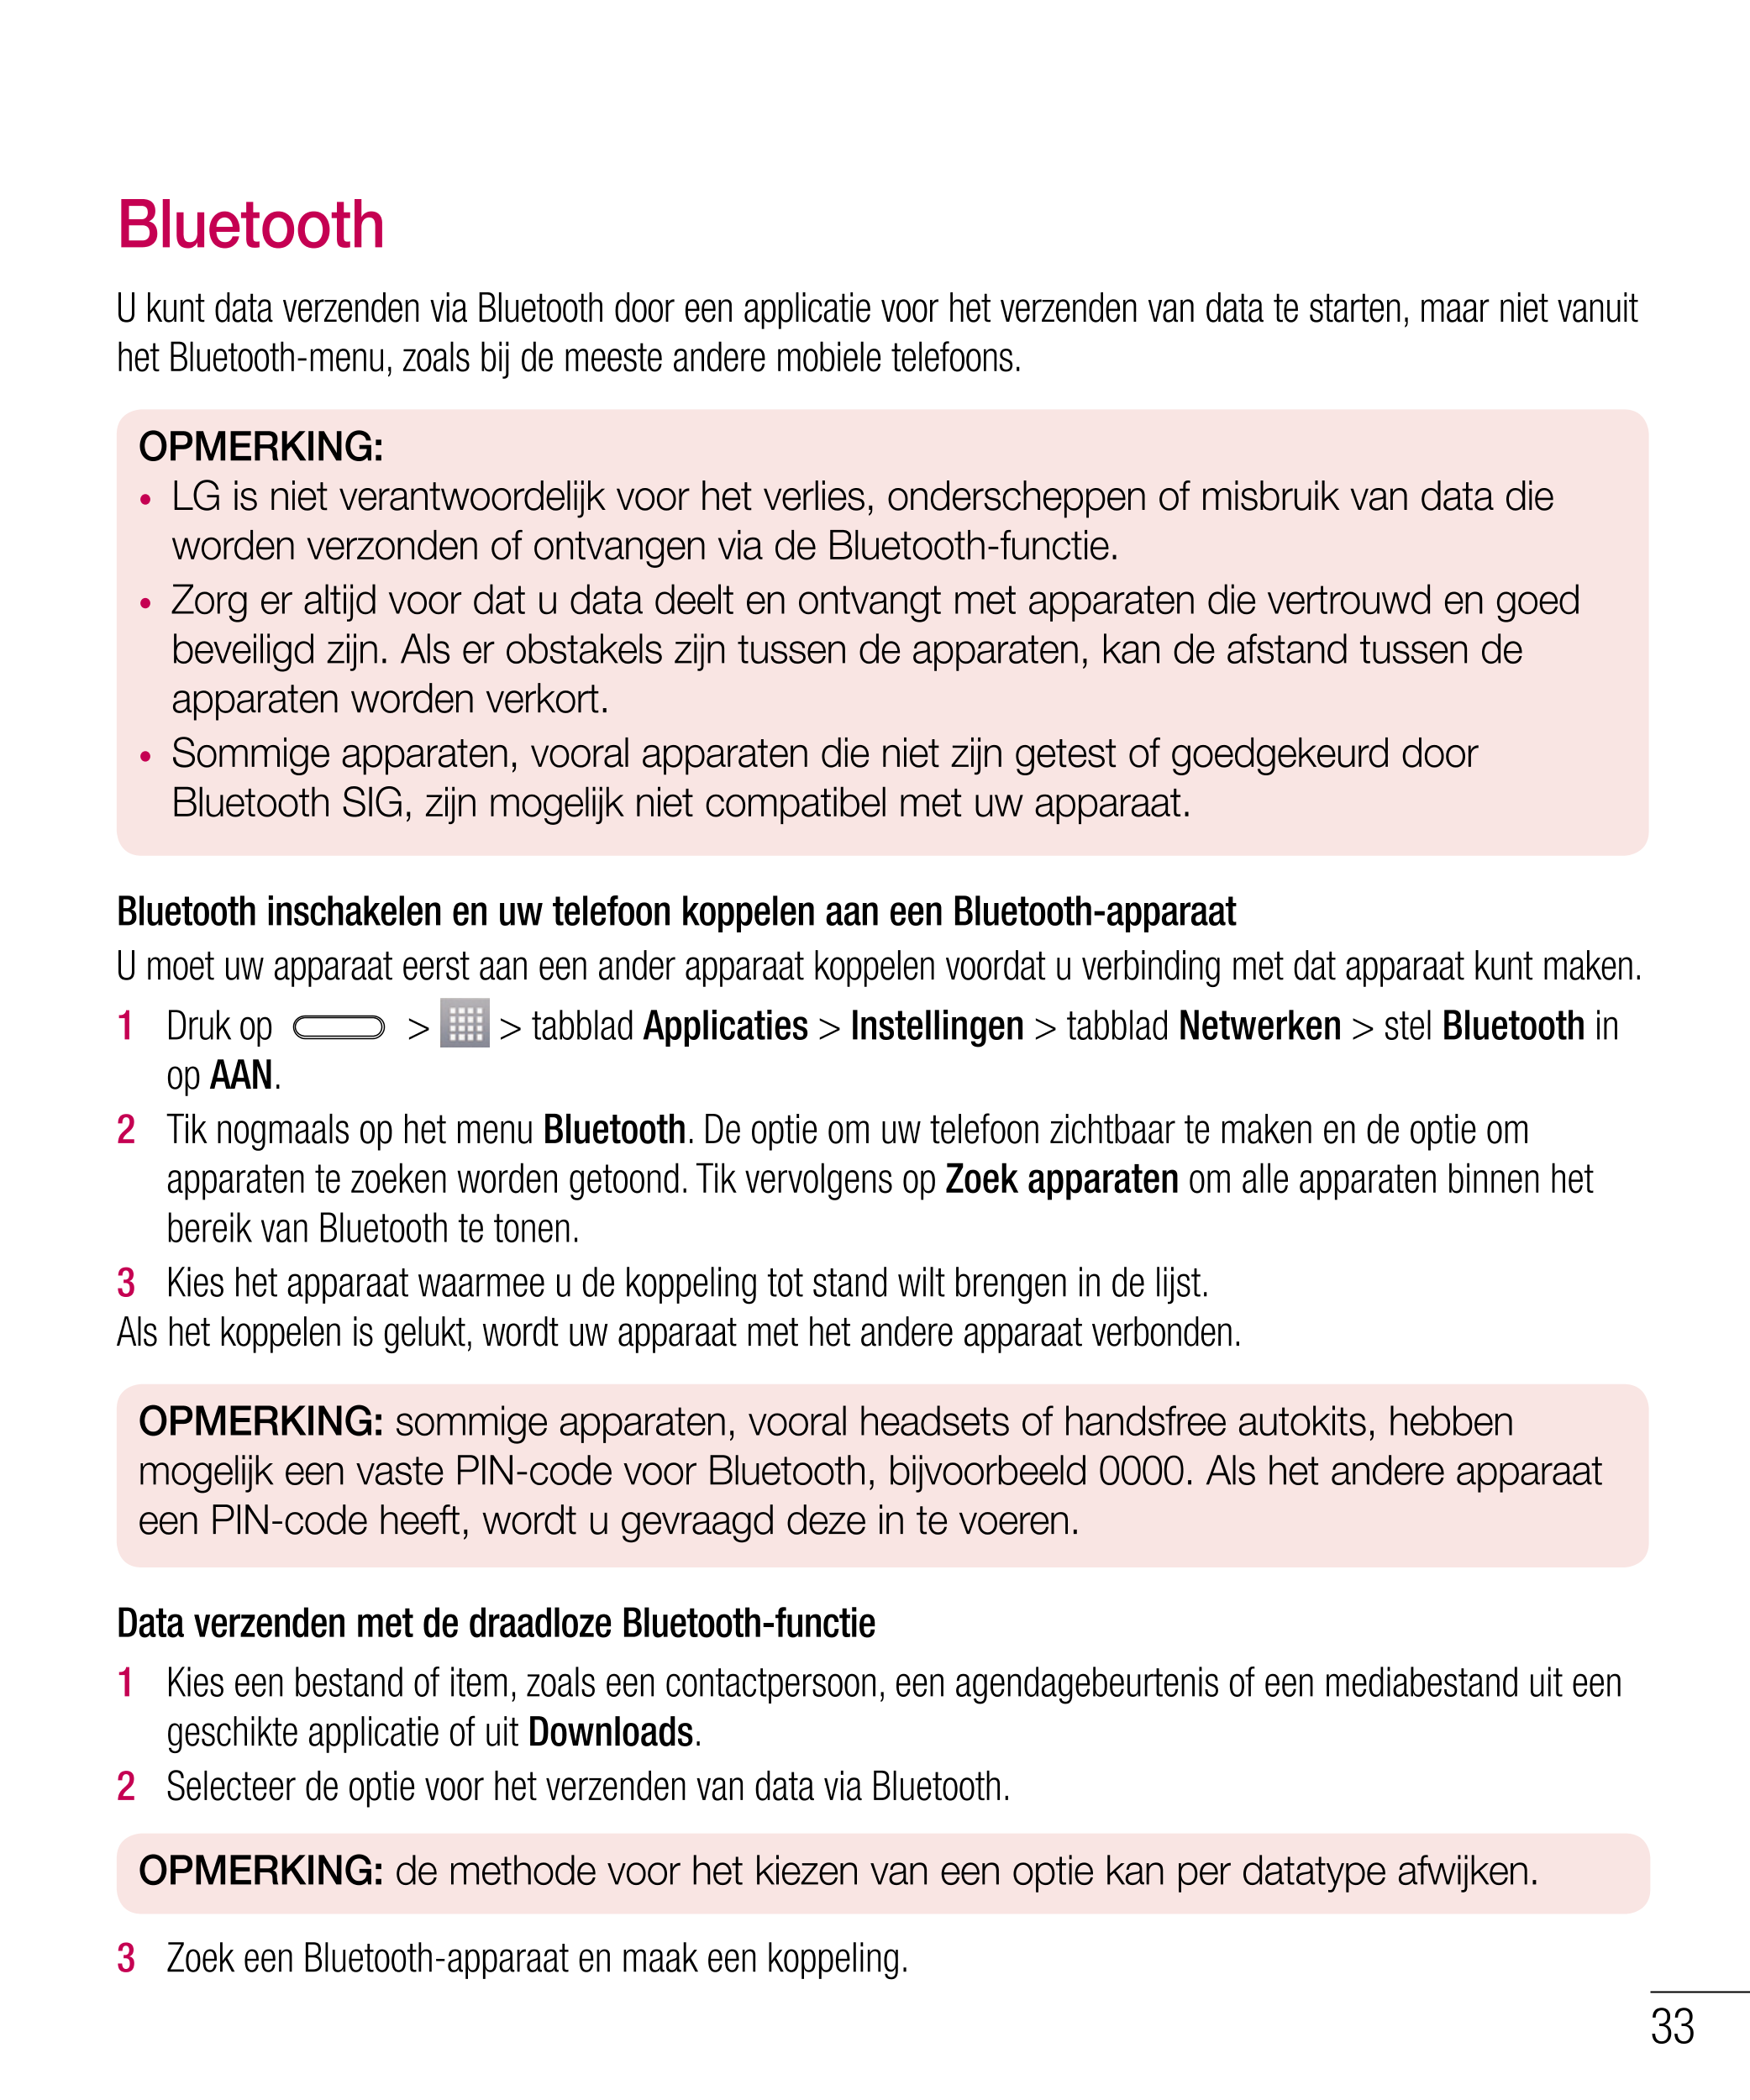 Bluetooth
U kunt data verzenden via Bluetooth door een applicatie voor het verzenden van data te starten, maar niet vanuit 
het 